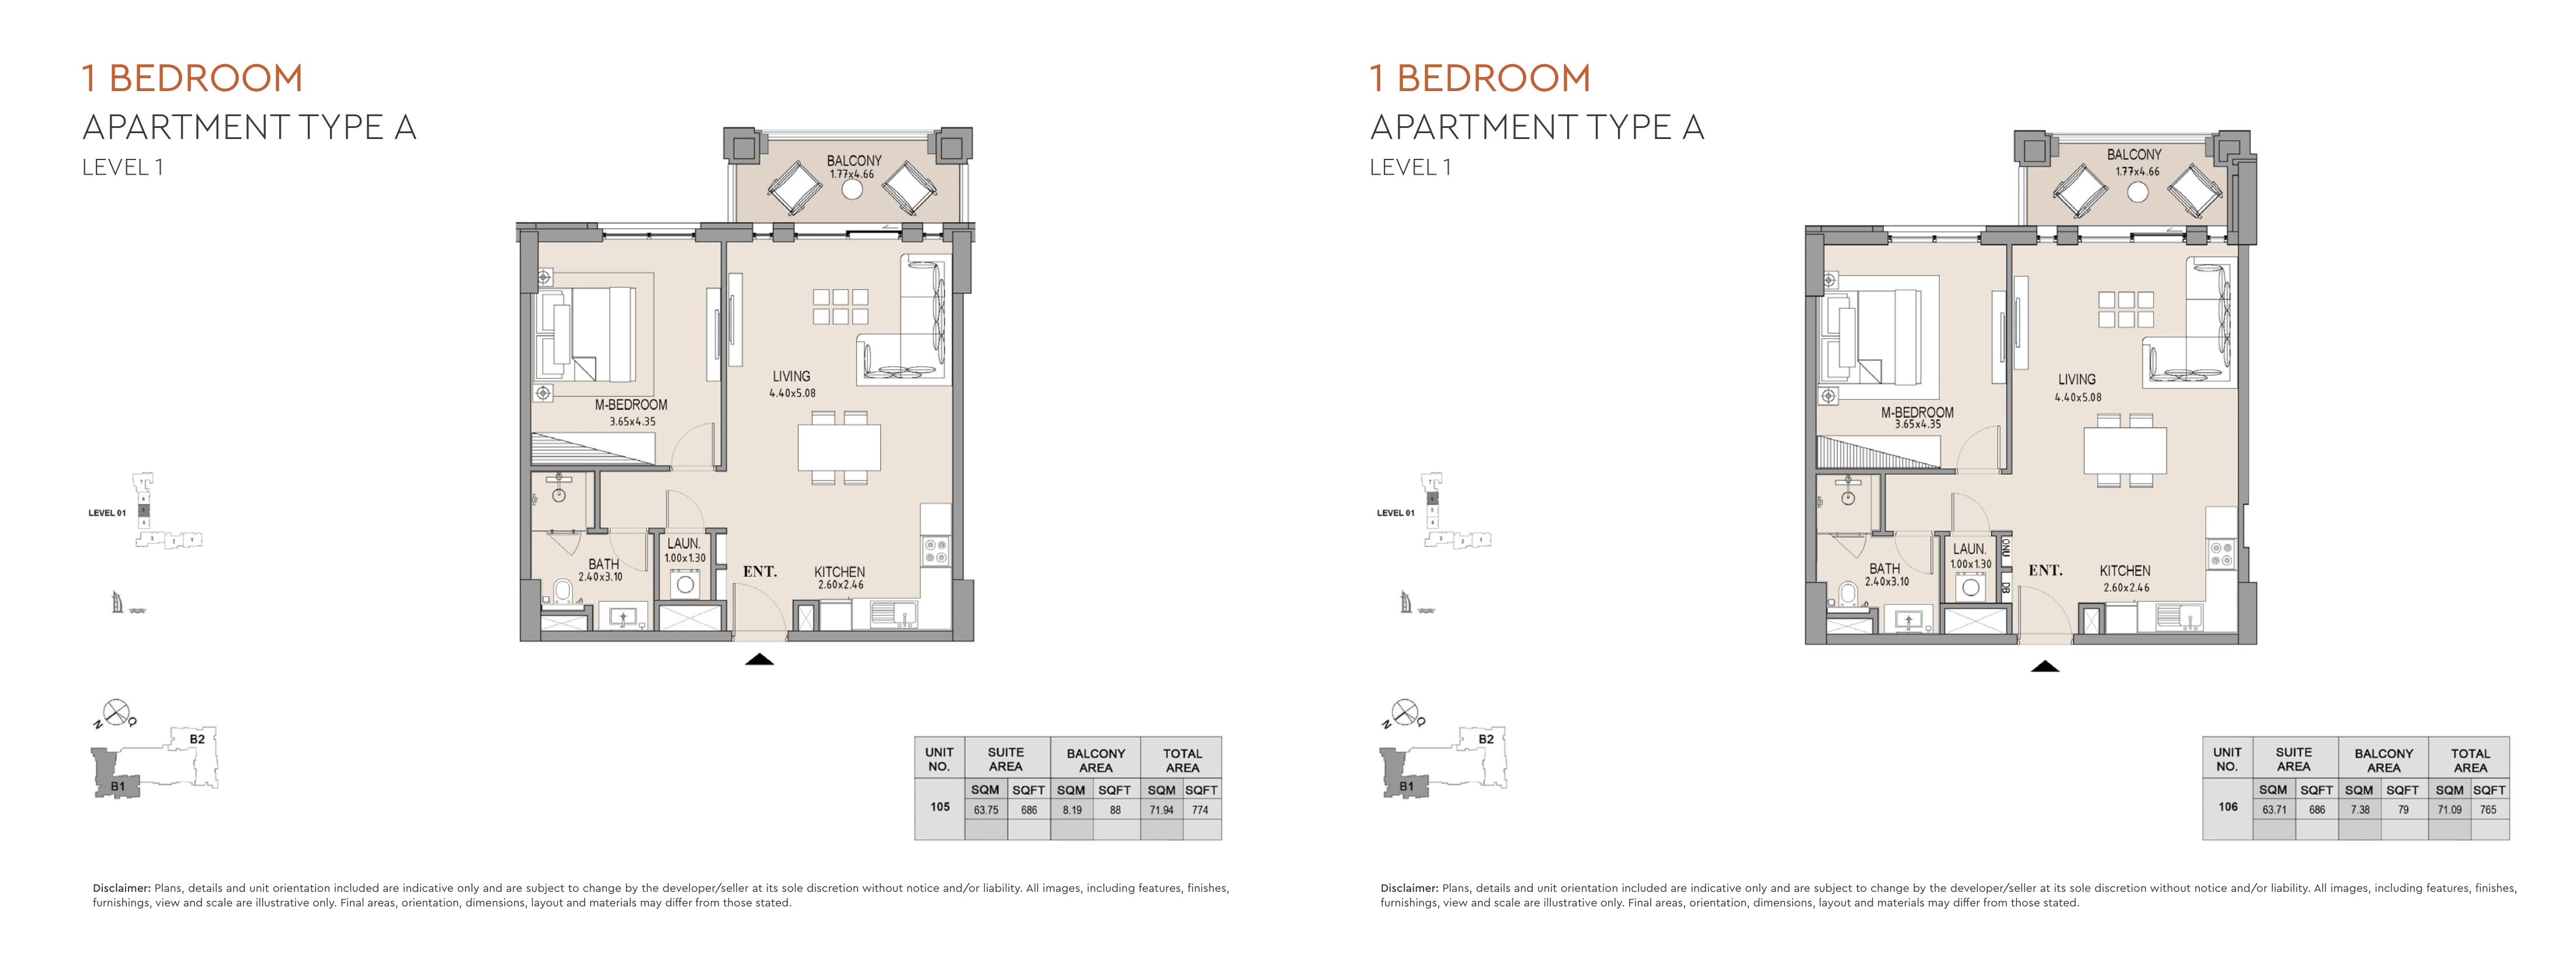 1 BEDROOM